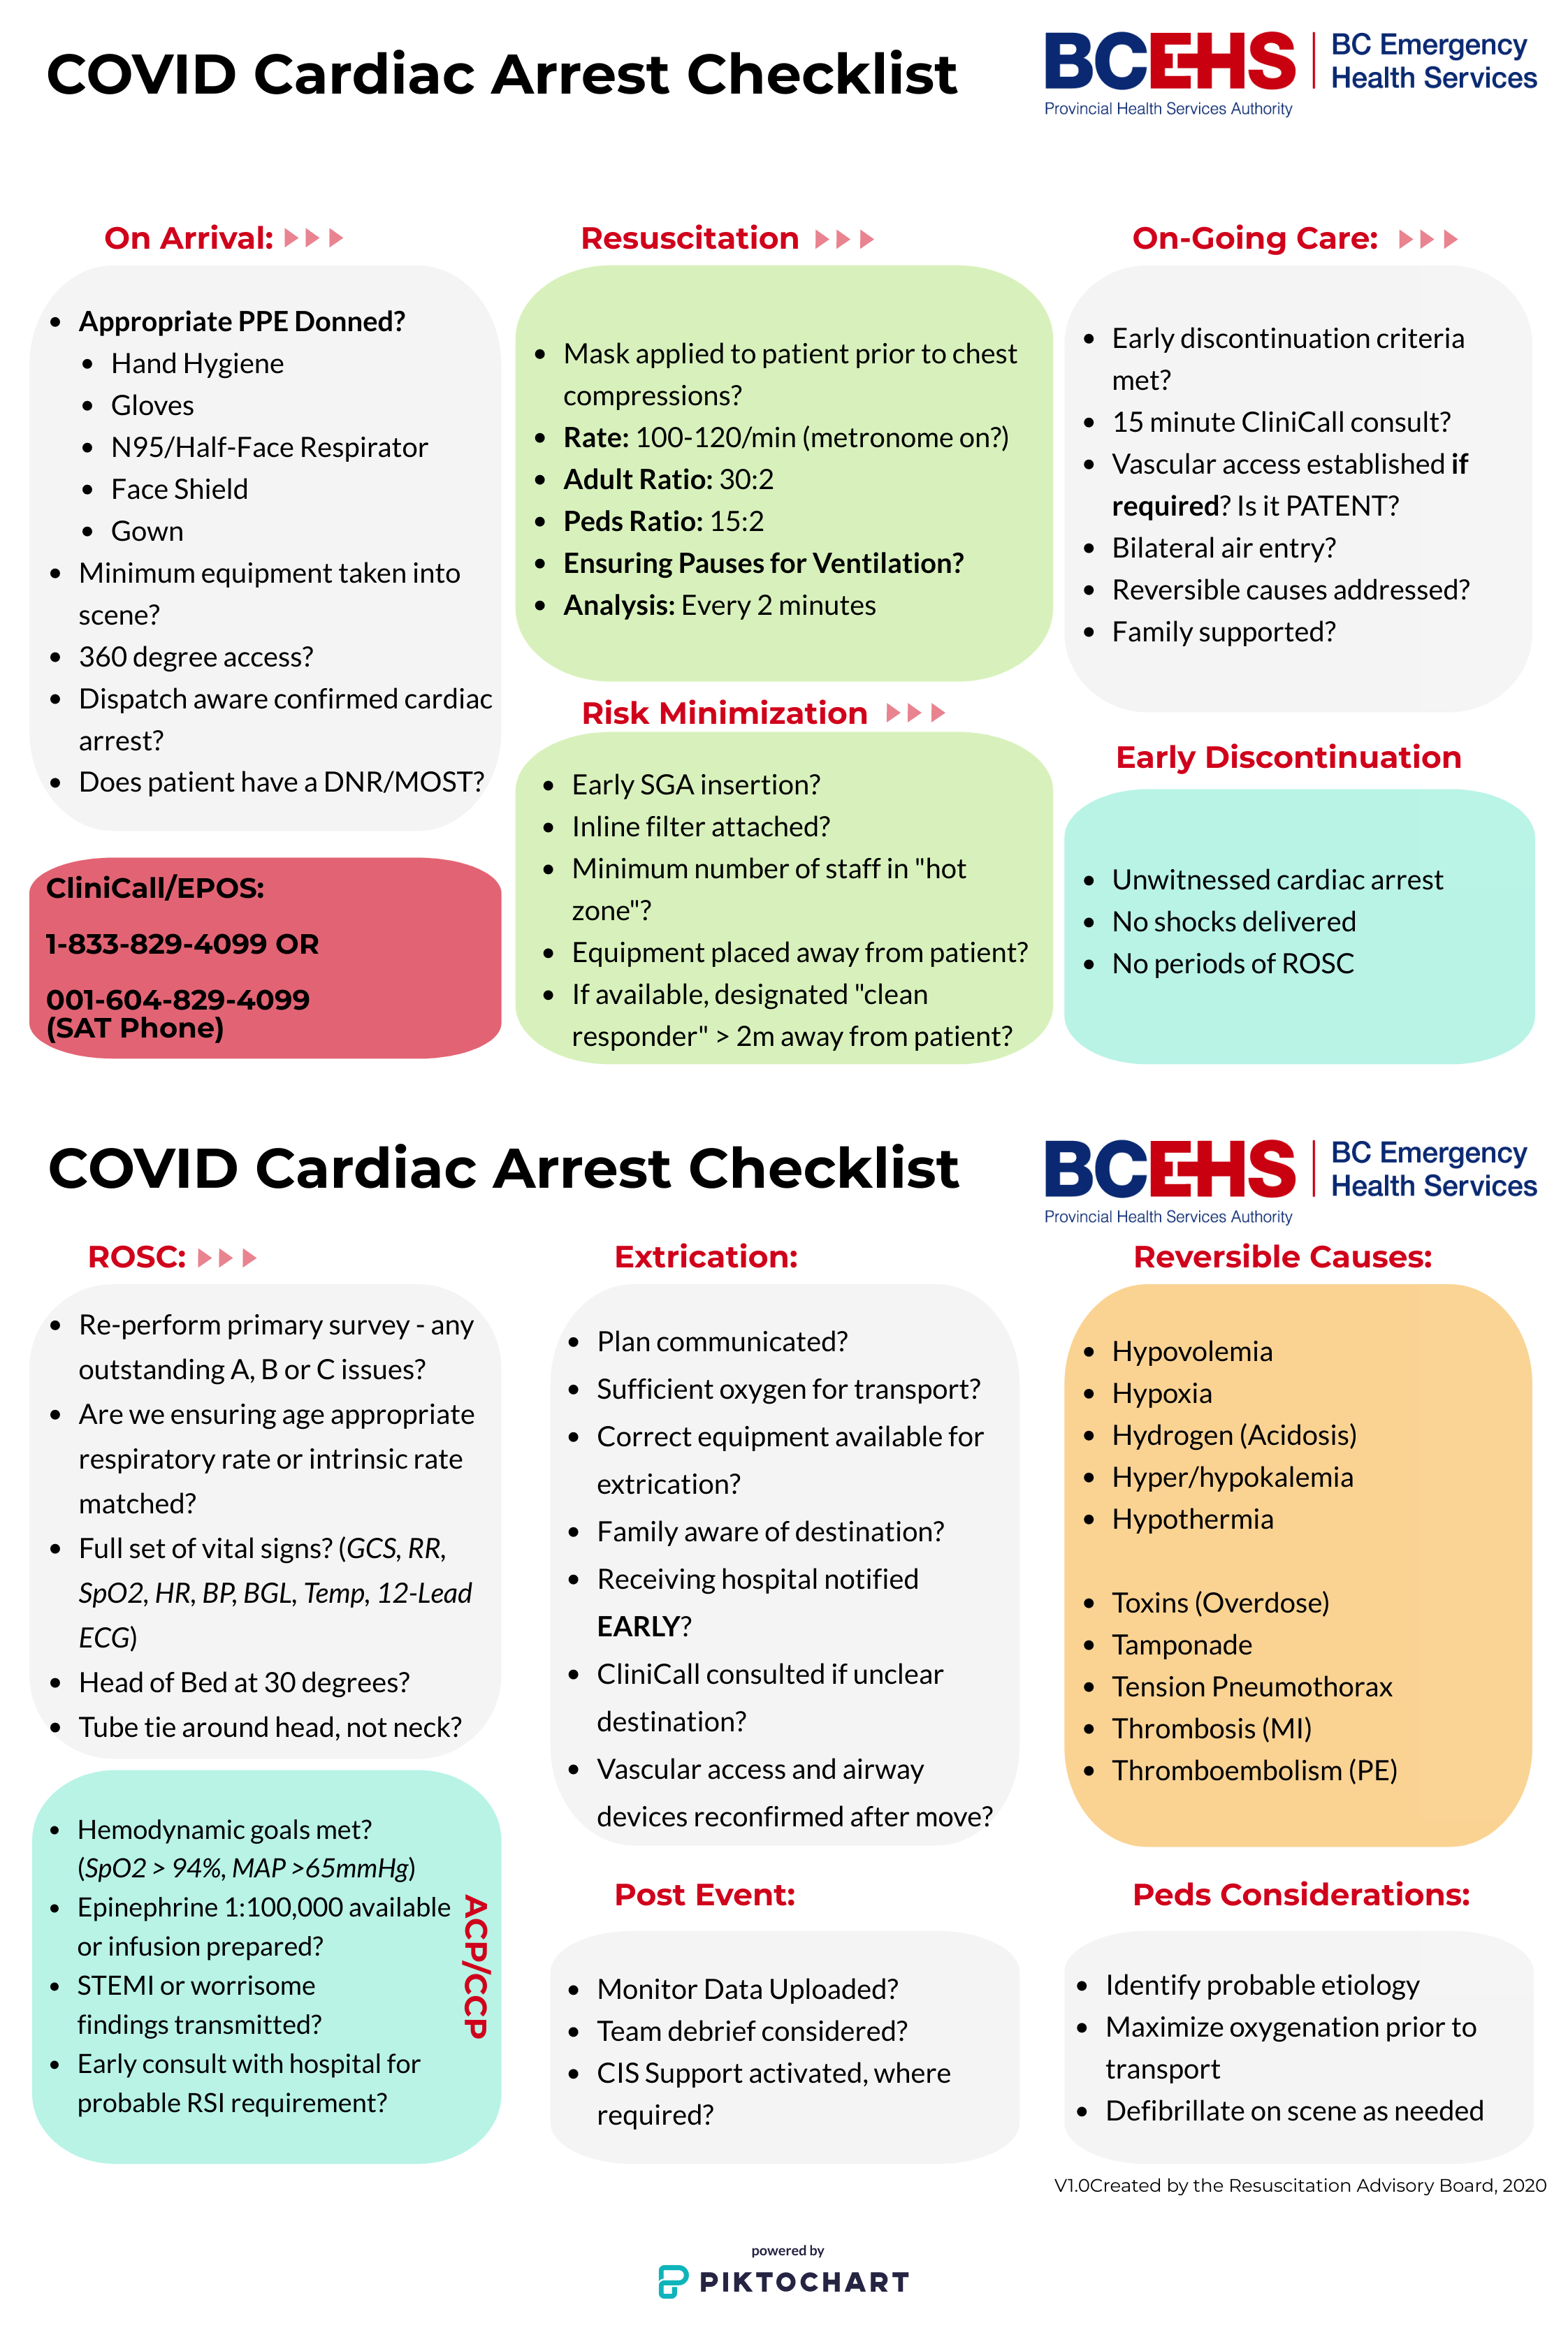 Covid 19 Cardiac Arrest Checklist